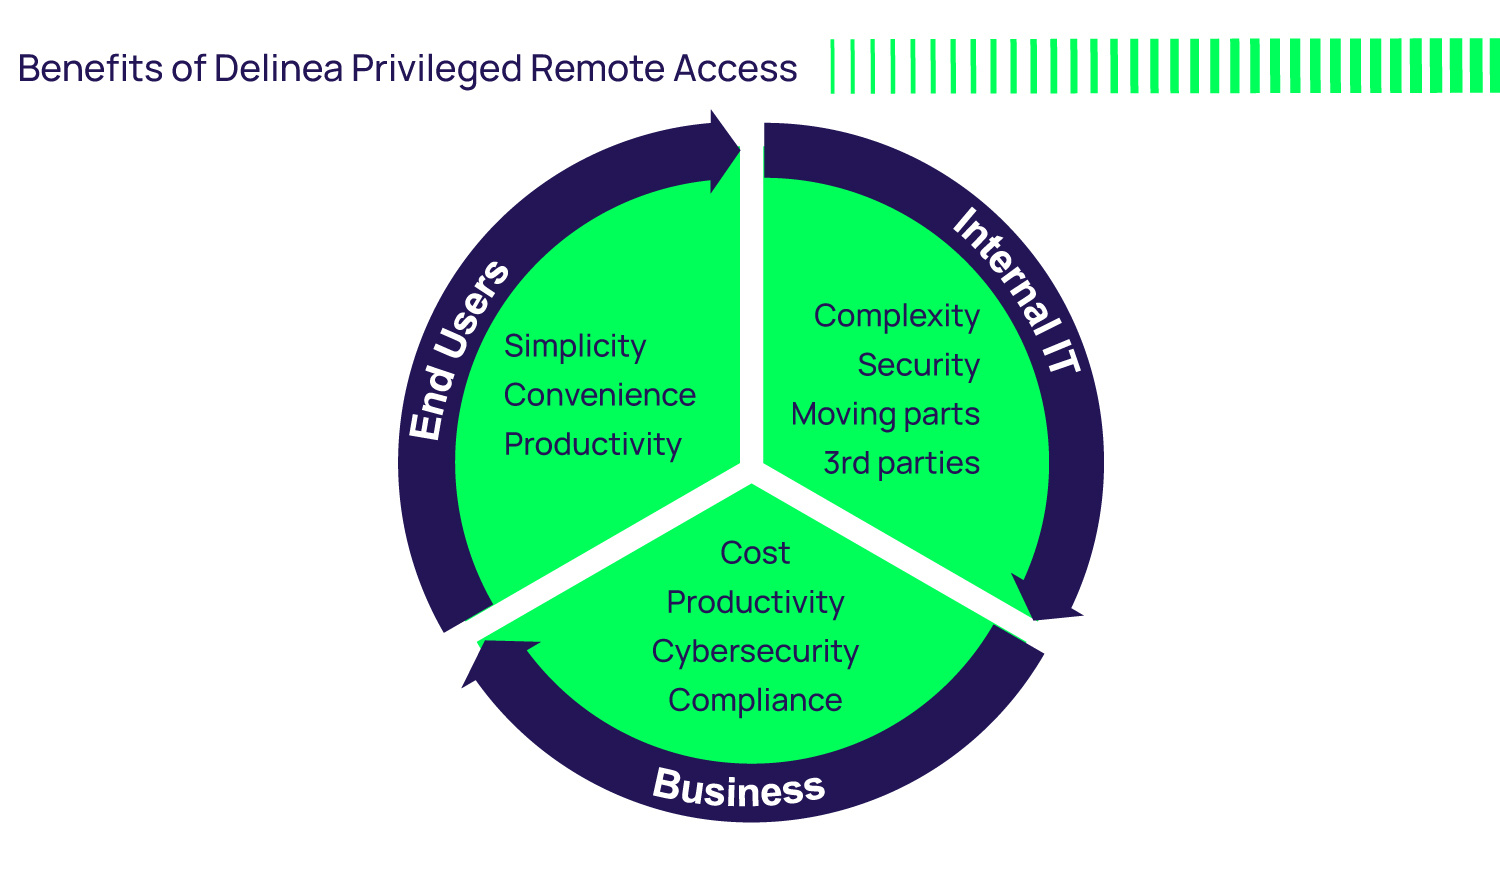 Benefits of Delinea Privileged Remote Access